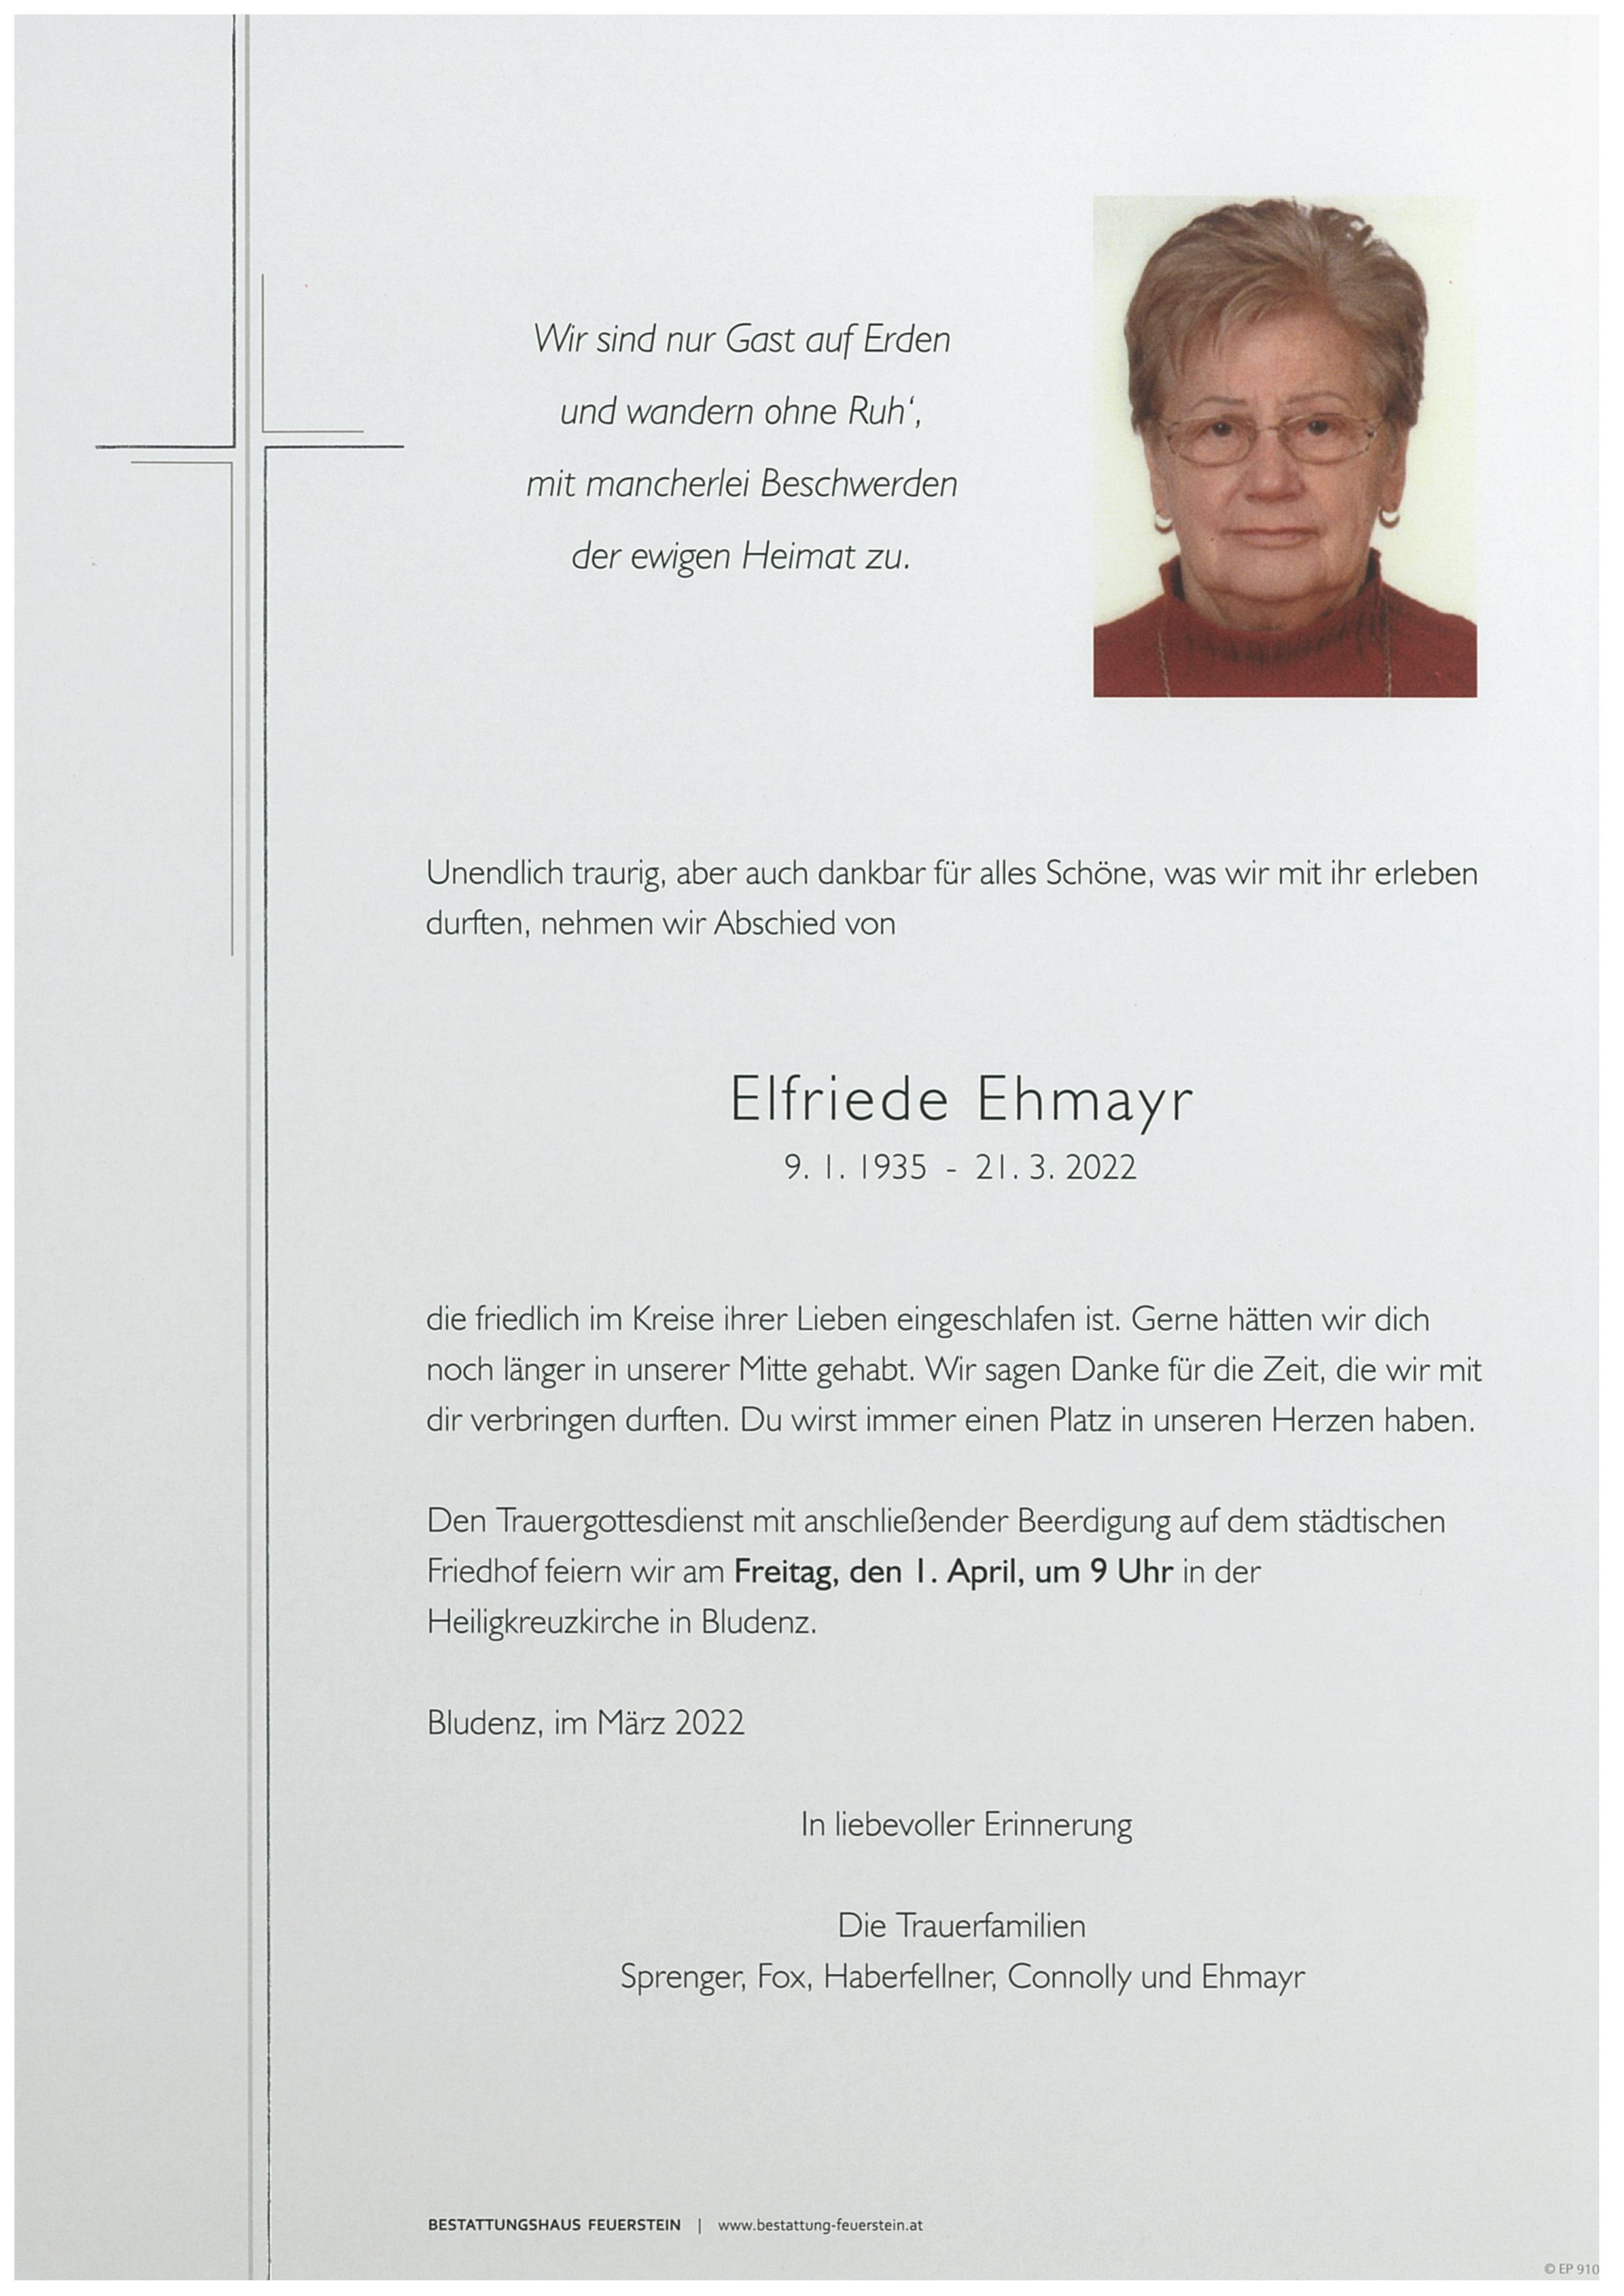 Elfriede Ehmayr